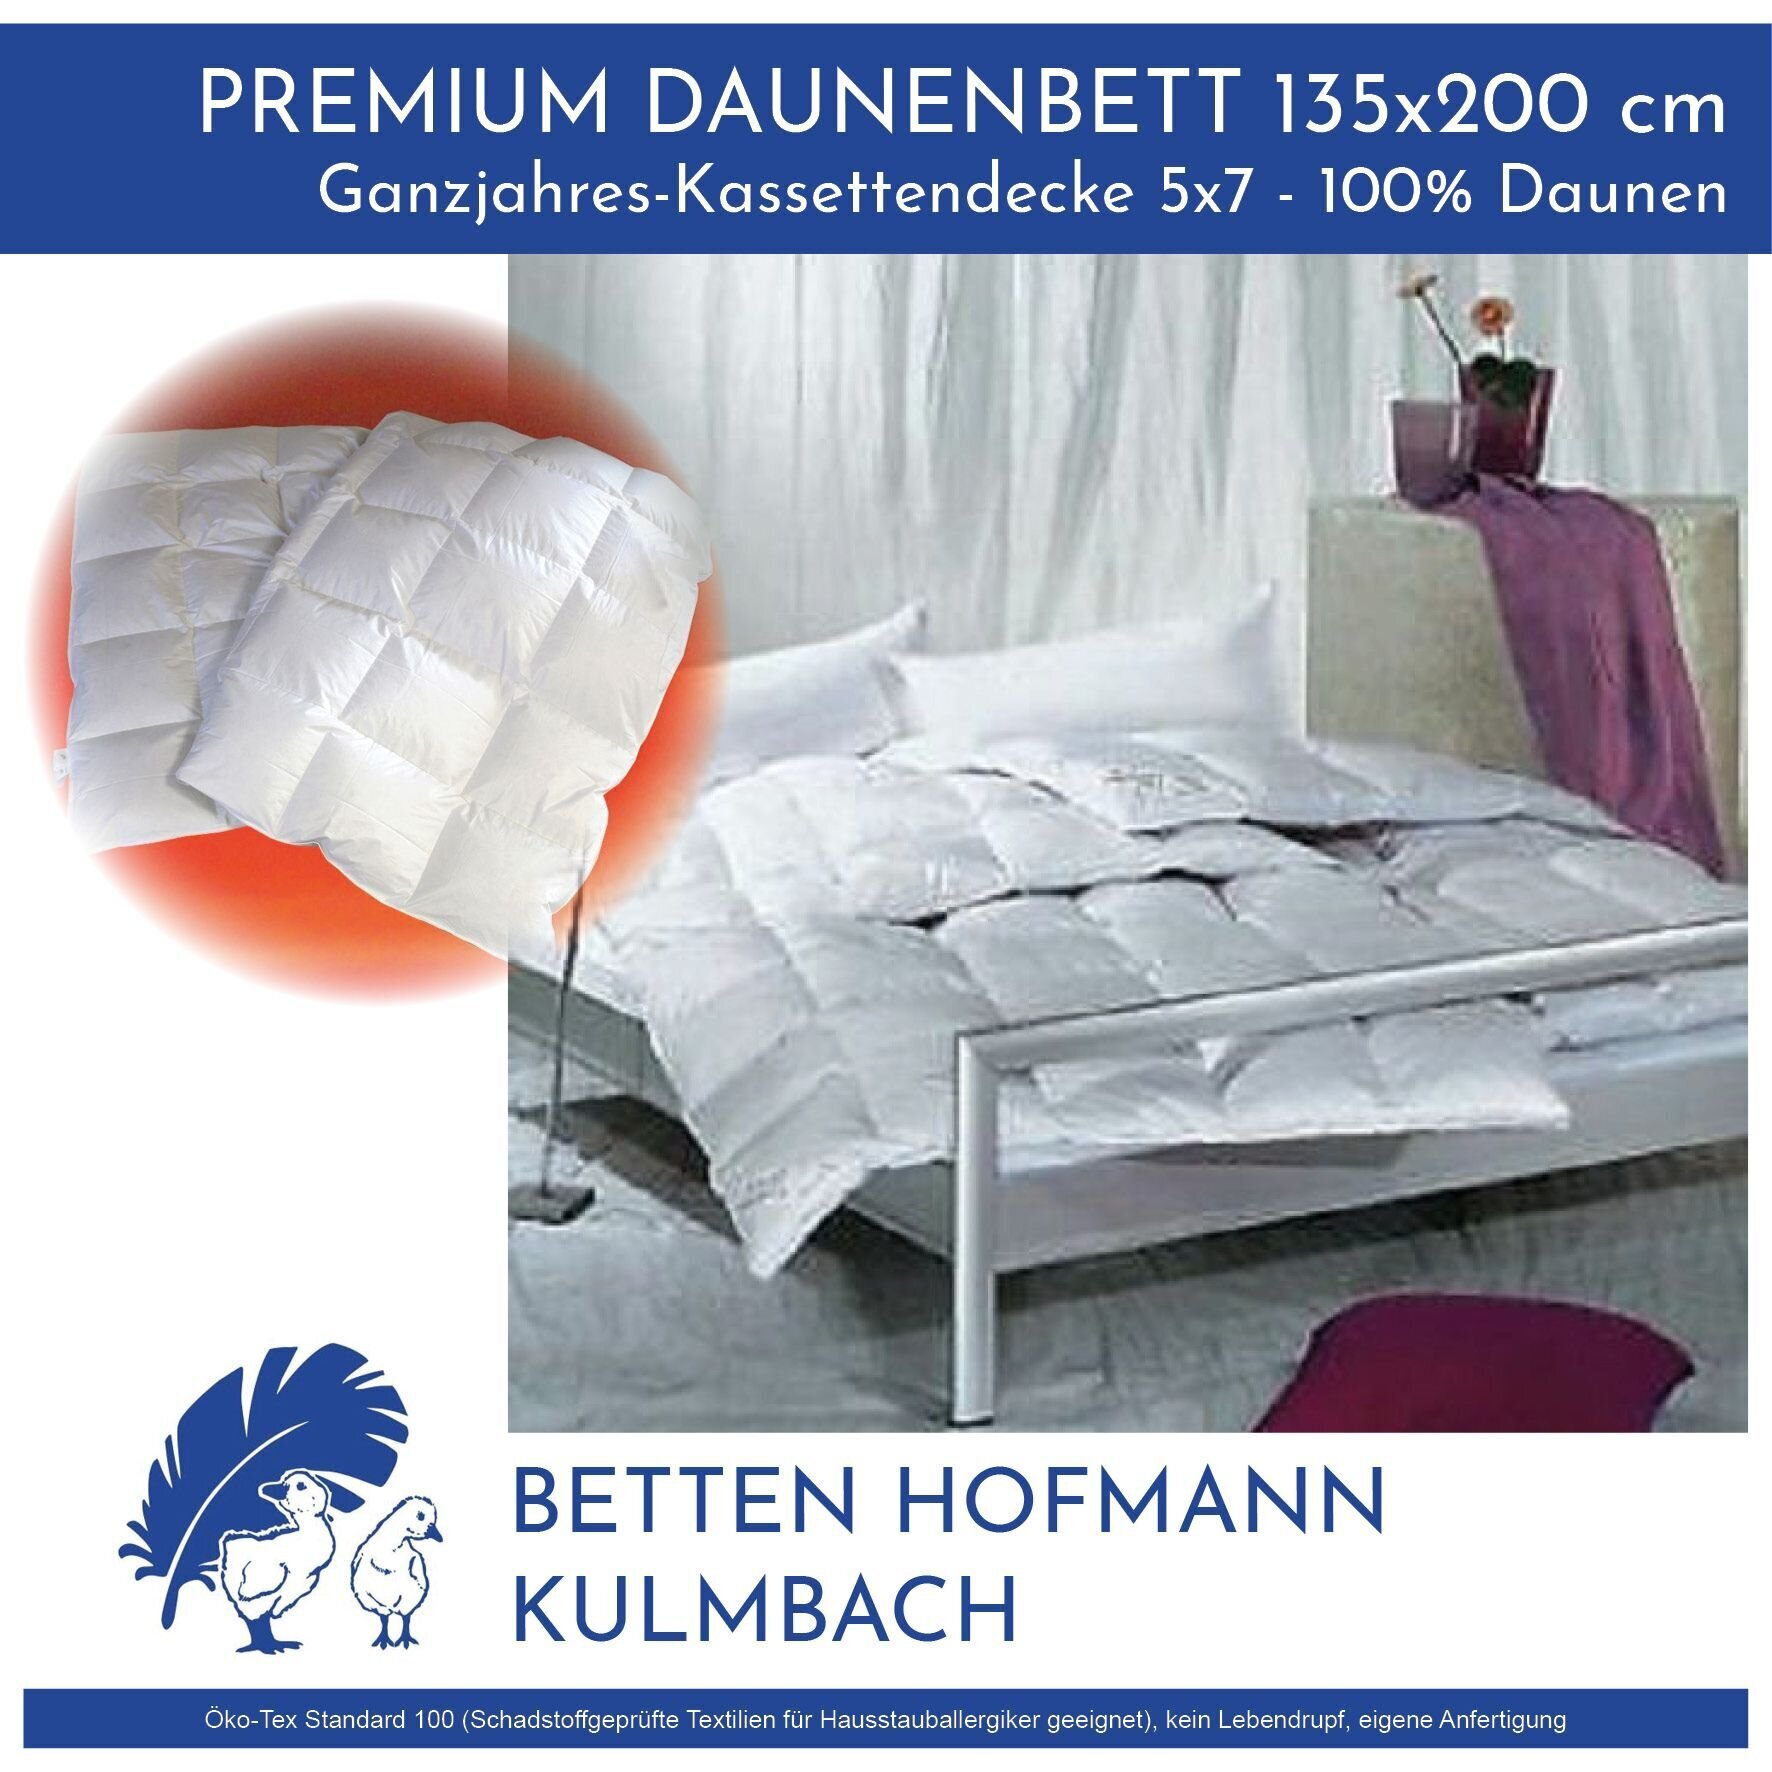 Bilder Betten Hofmann